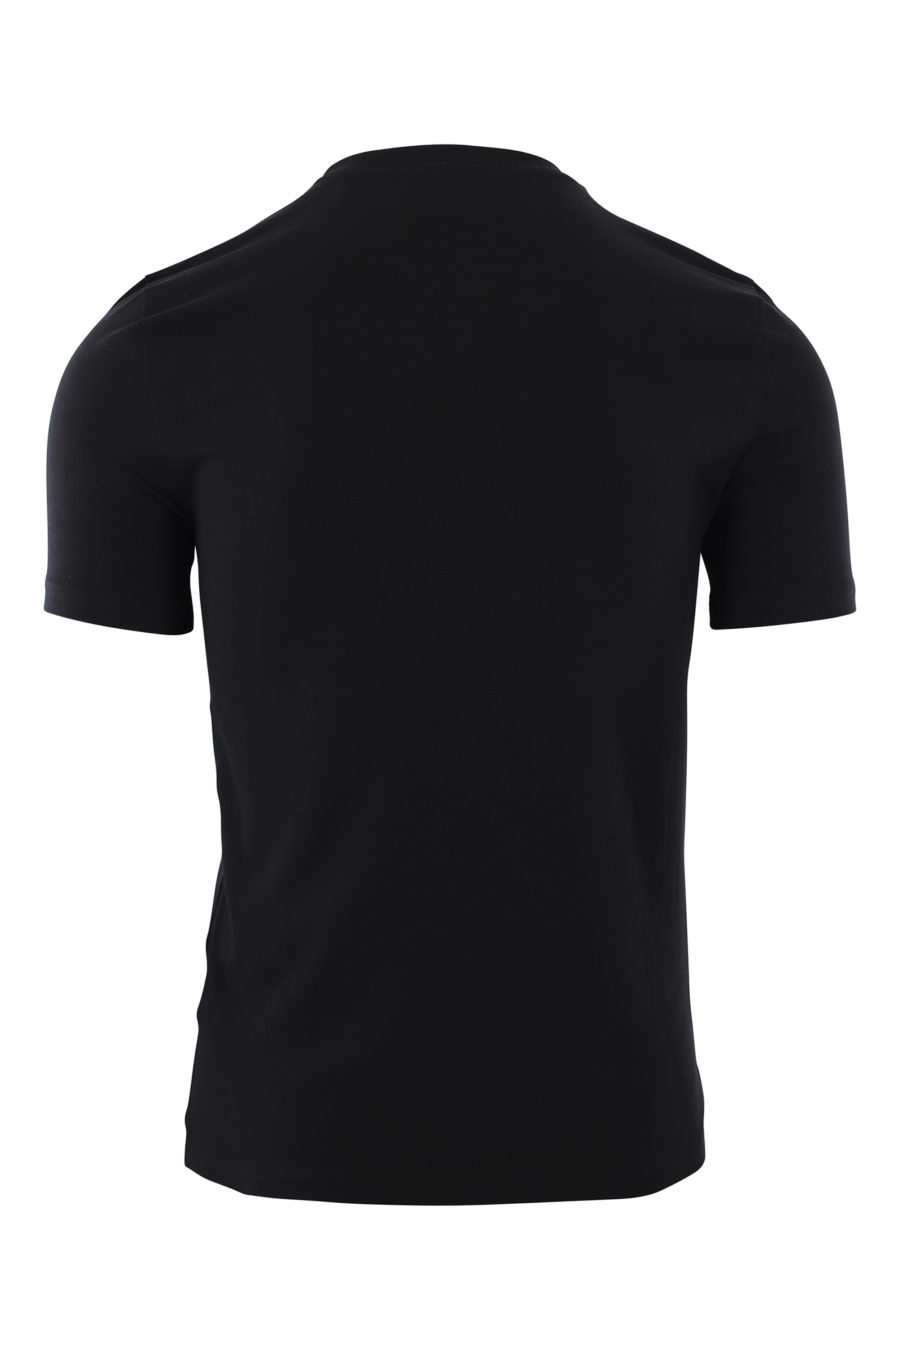 Camiseta negra con logo milano "smiley" - IMG 2426